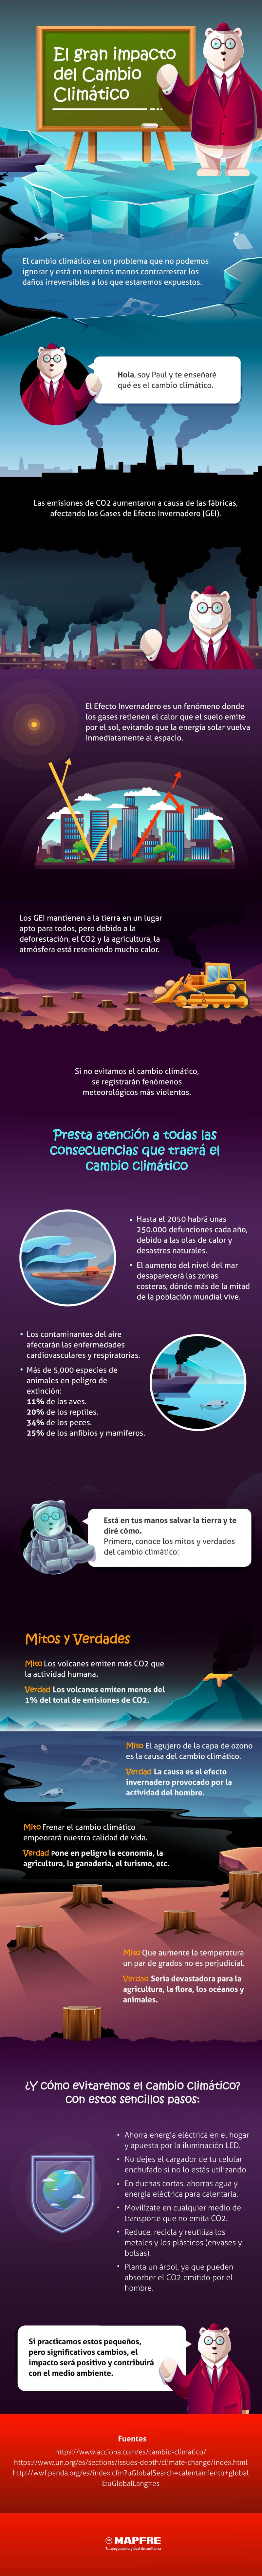 infografía sobre el cambio climático